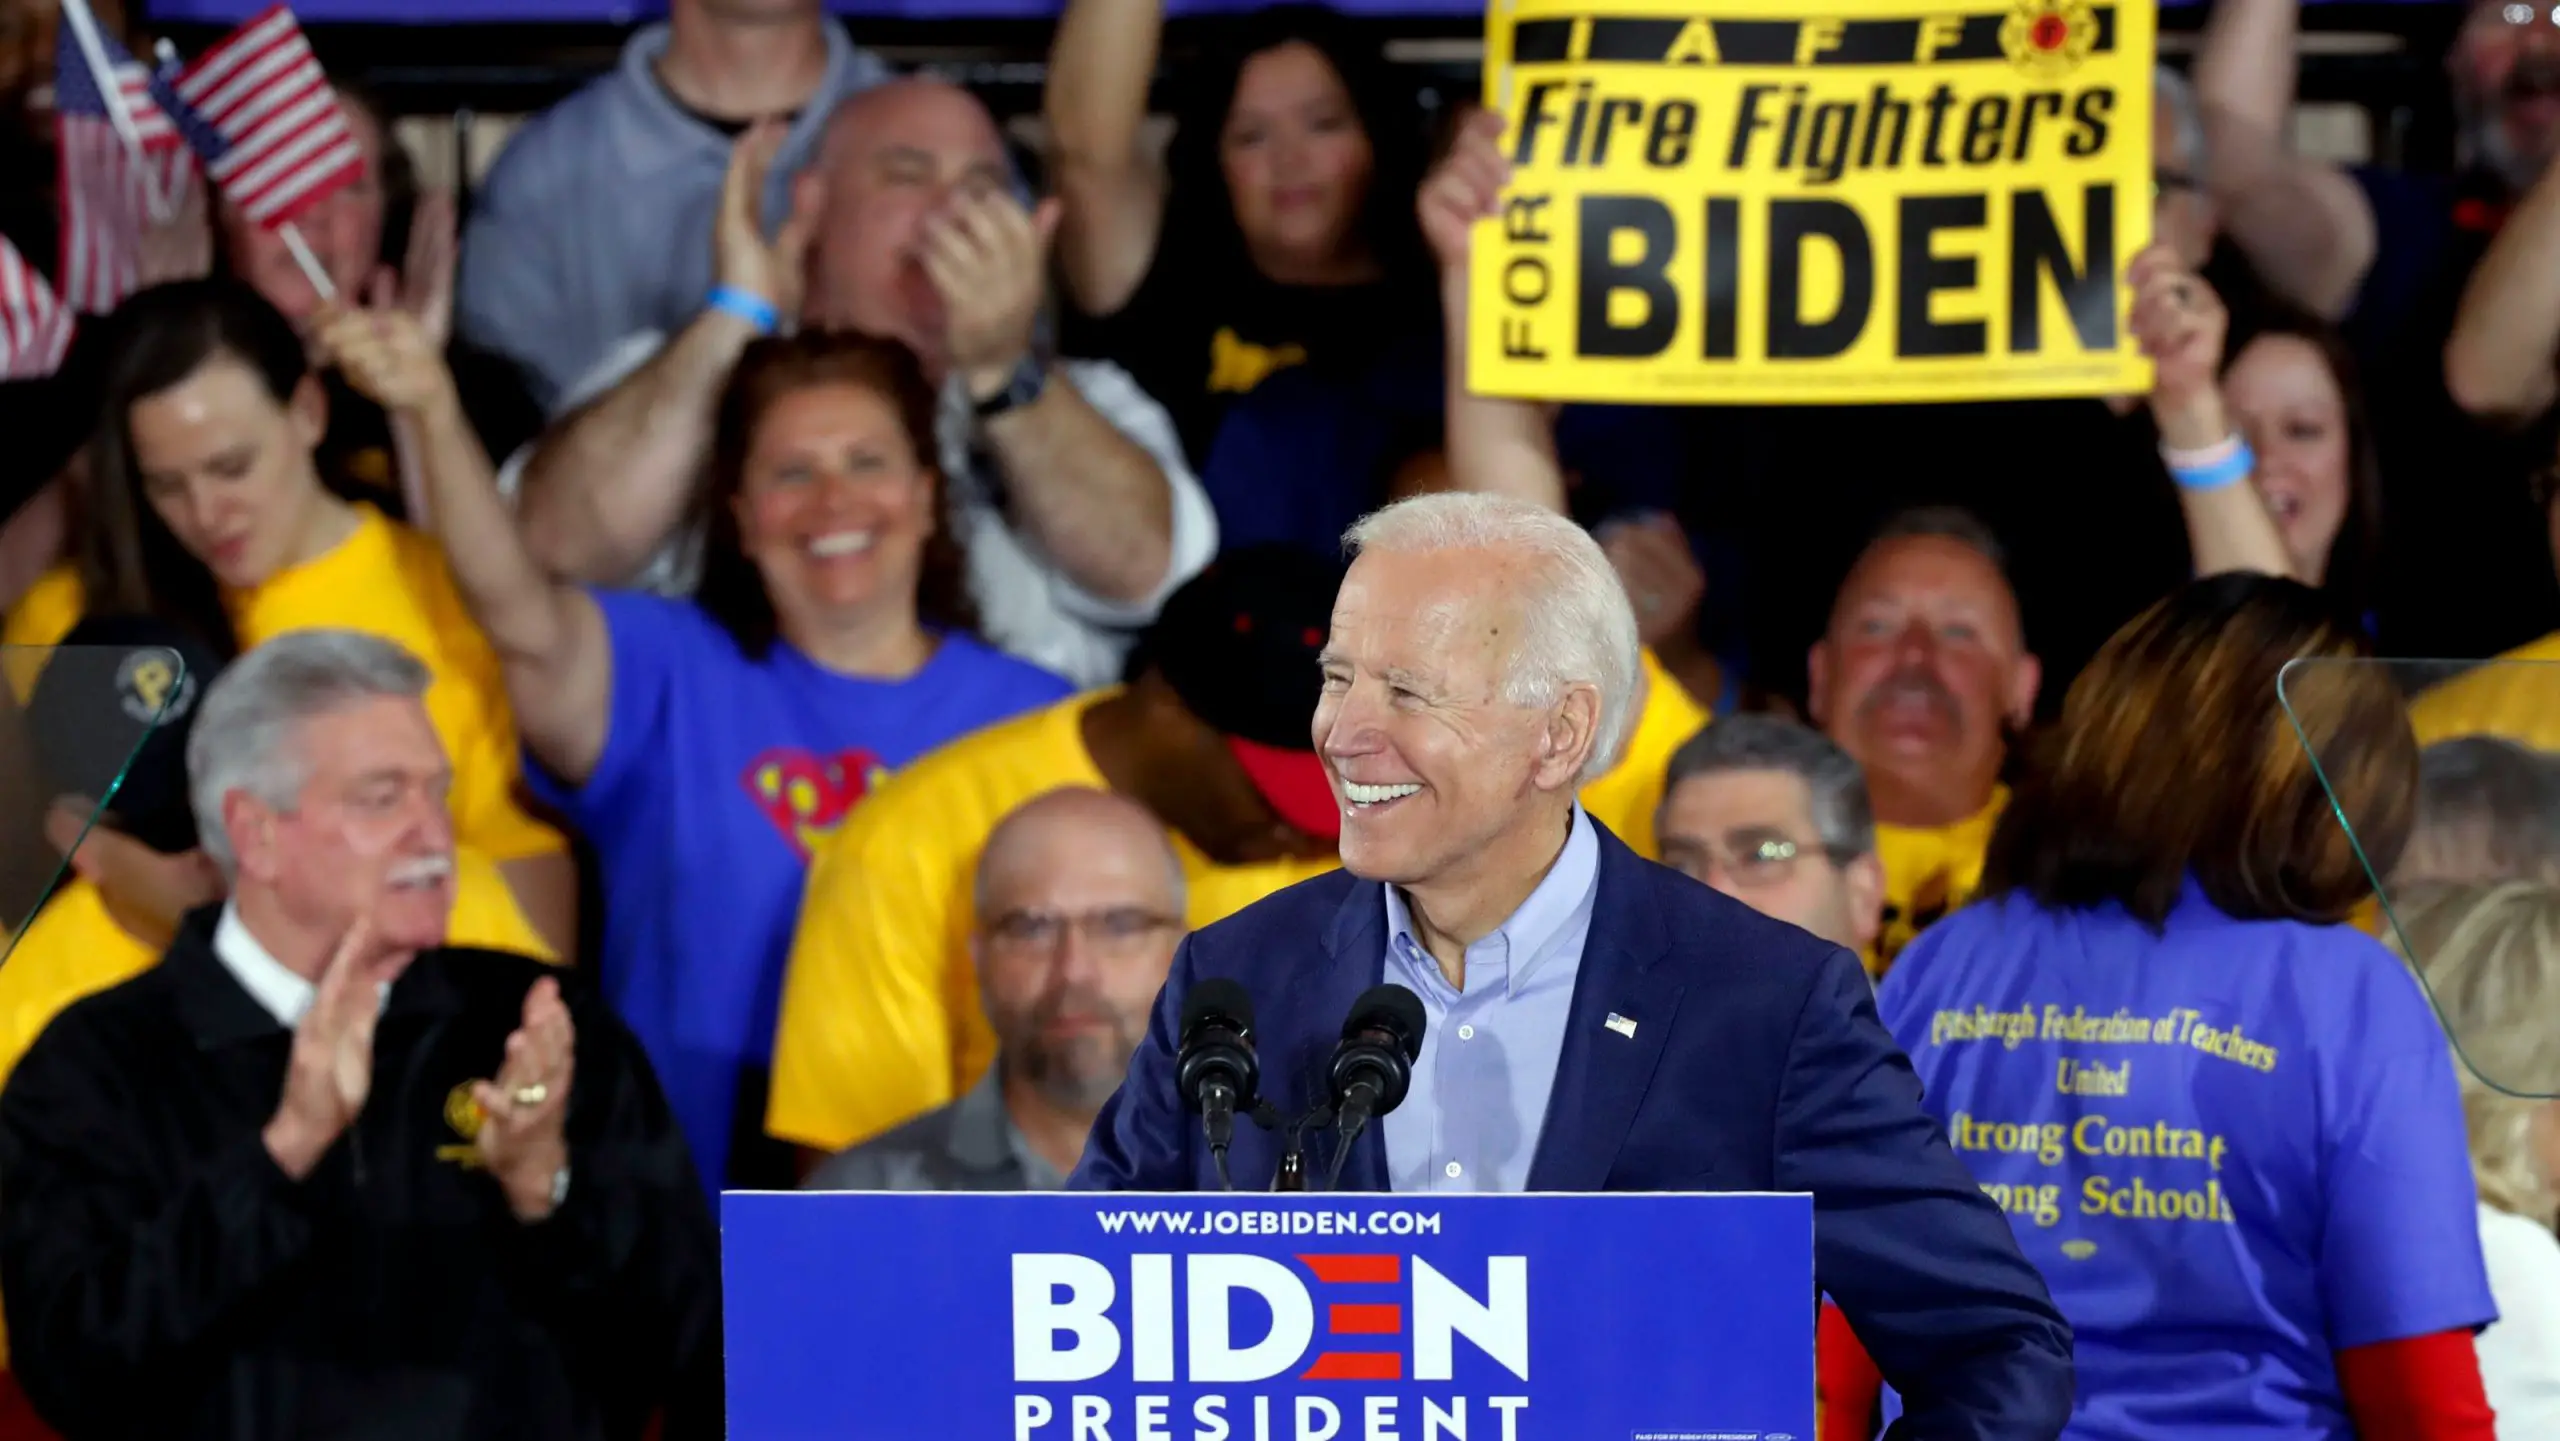 Joe Biden enters 2020 as frontrunner, top Democratic target